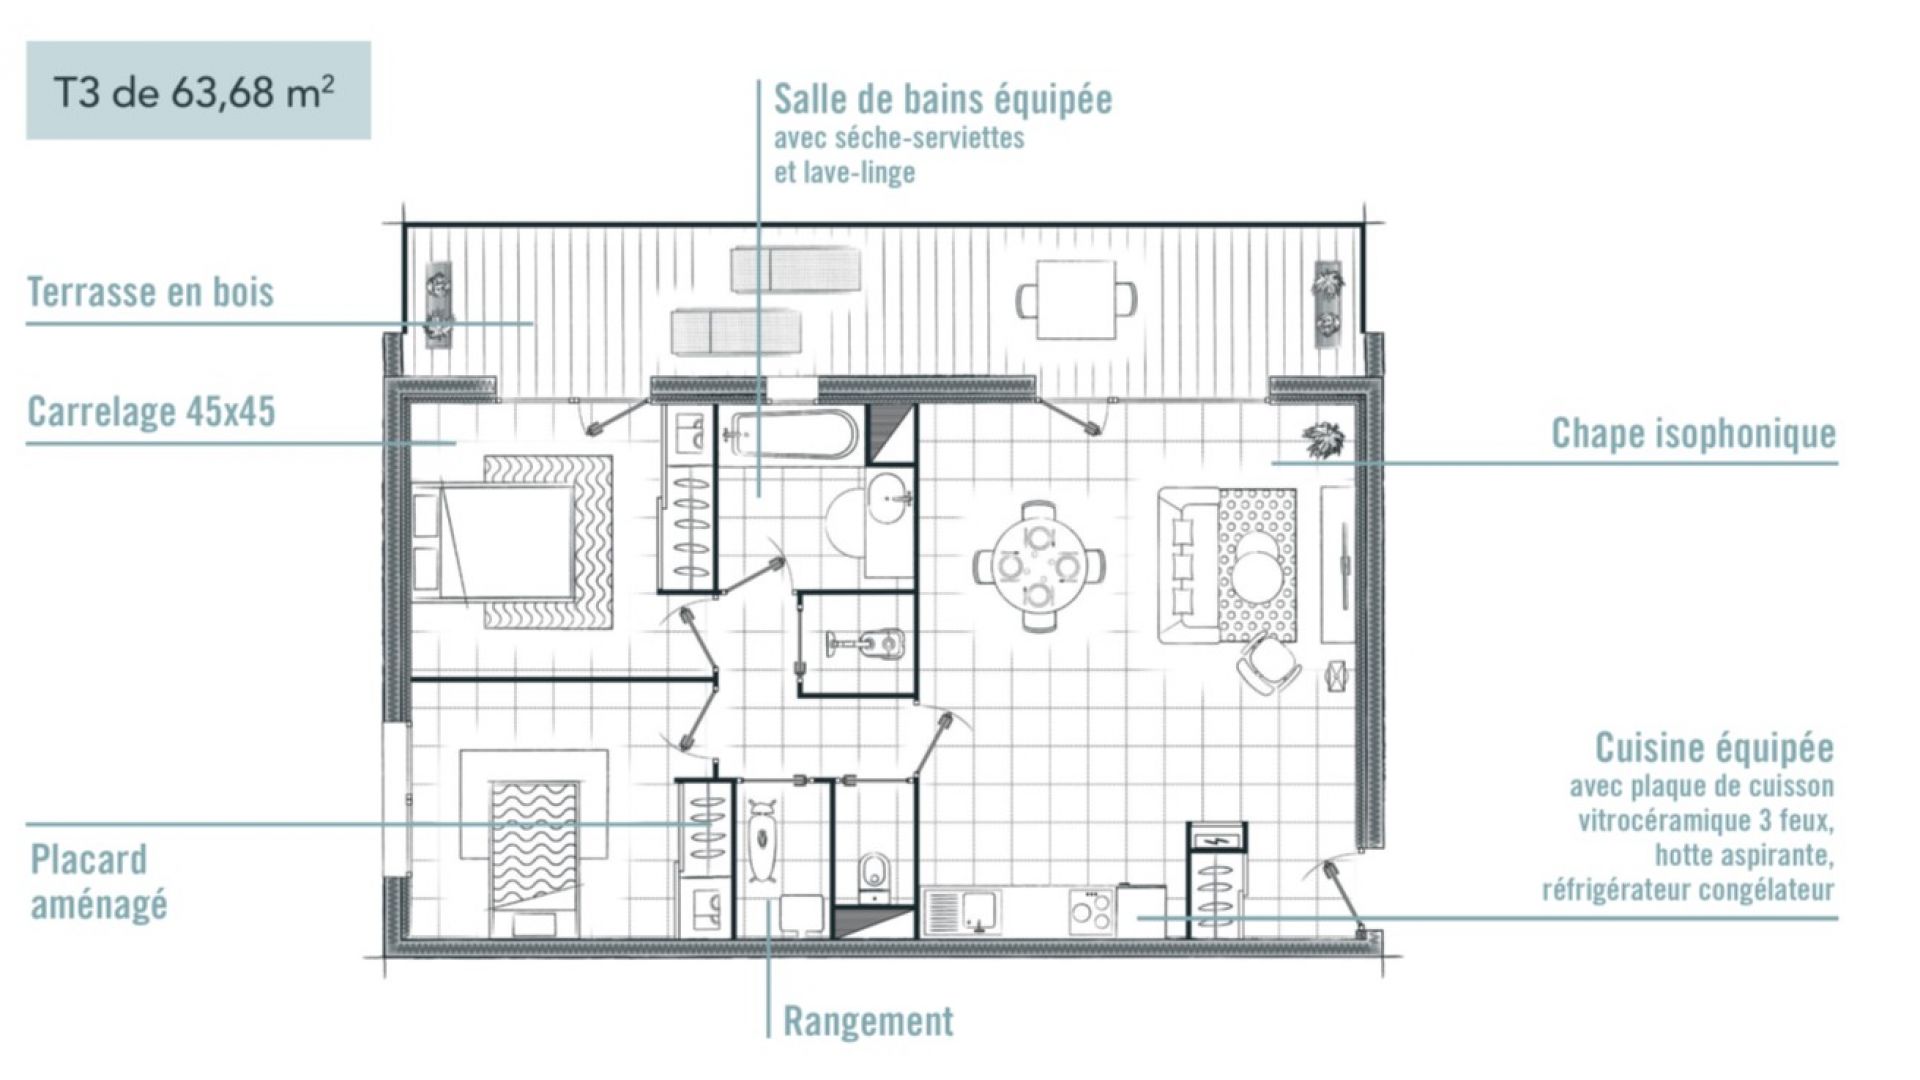 Greencity immobilier - achat immobilier neuf - appartements et villas du T2au T4 - Résidence Le Gardénia -31100 Toulouse Saint-Simon - plan appartement T3